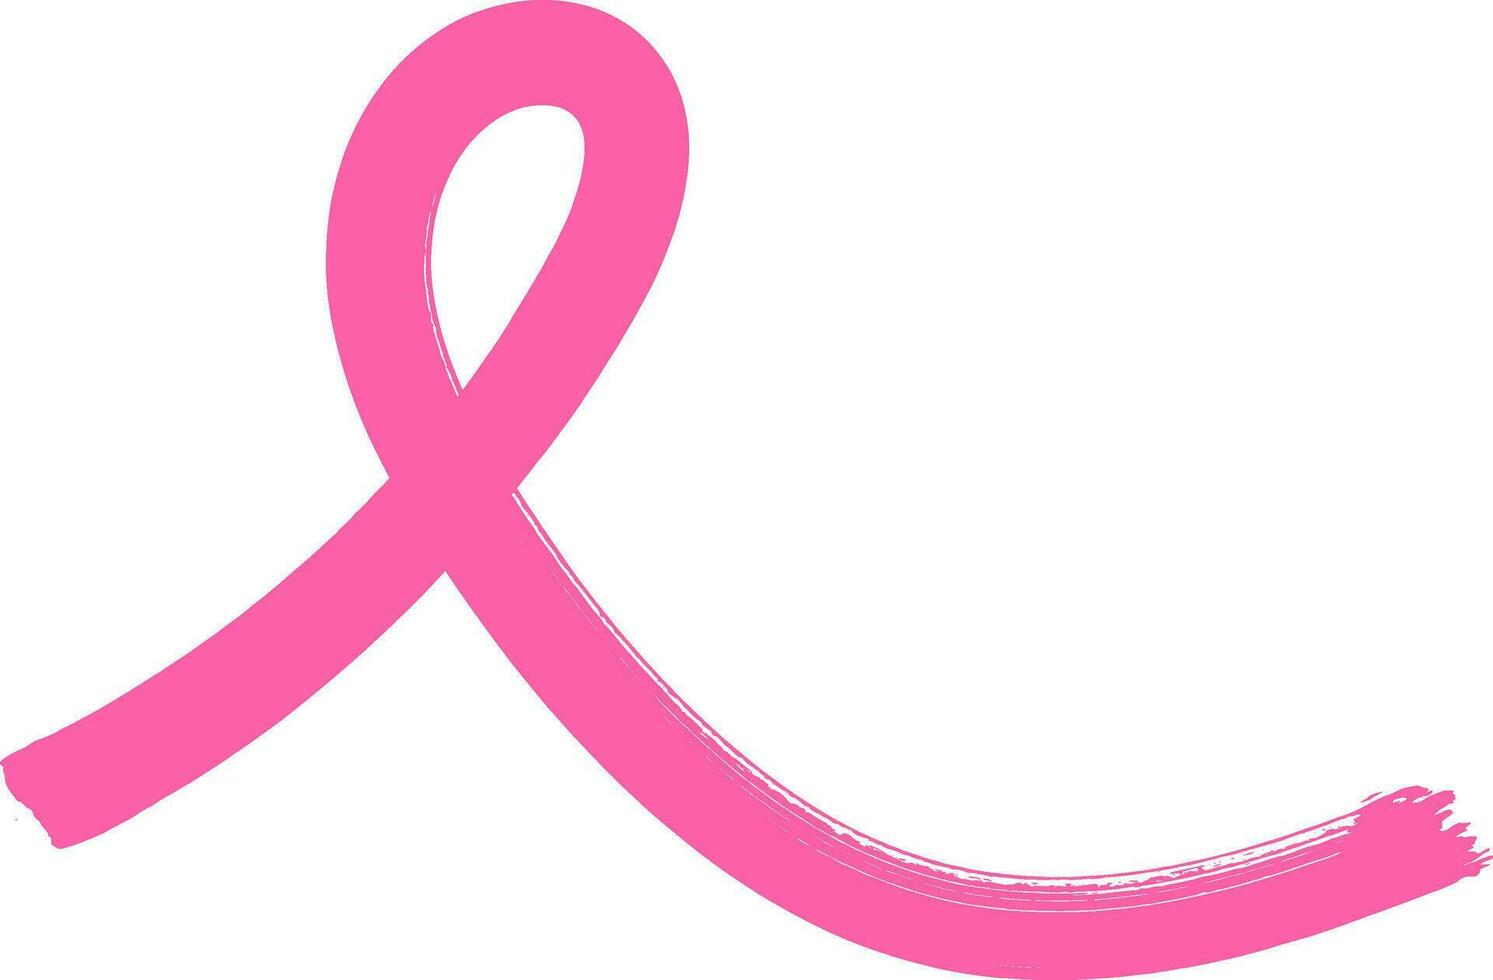 kanker lint, roze lint, bewustzijn lint, overlevende lint, kanker shilouette, clip art, kanker besnoeiing het dossier, borst kanker, hoop, roze, sterk vrouw, kanker vector